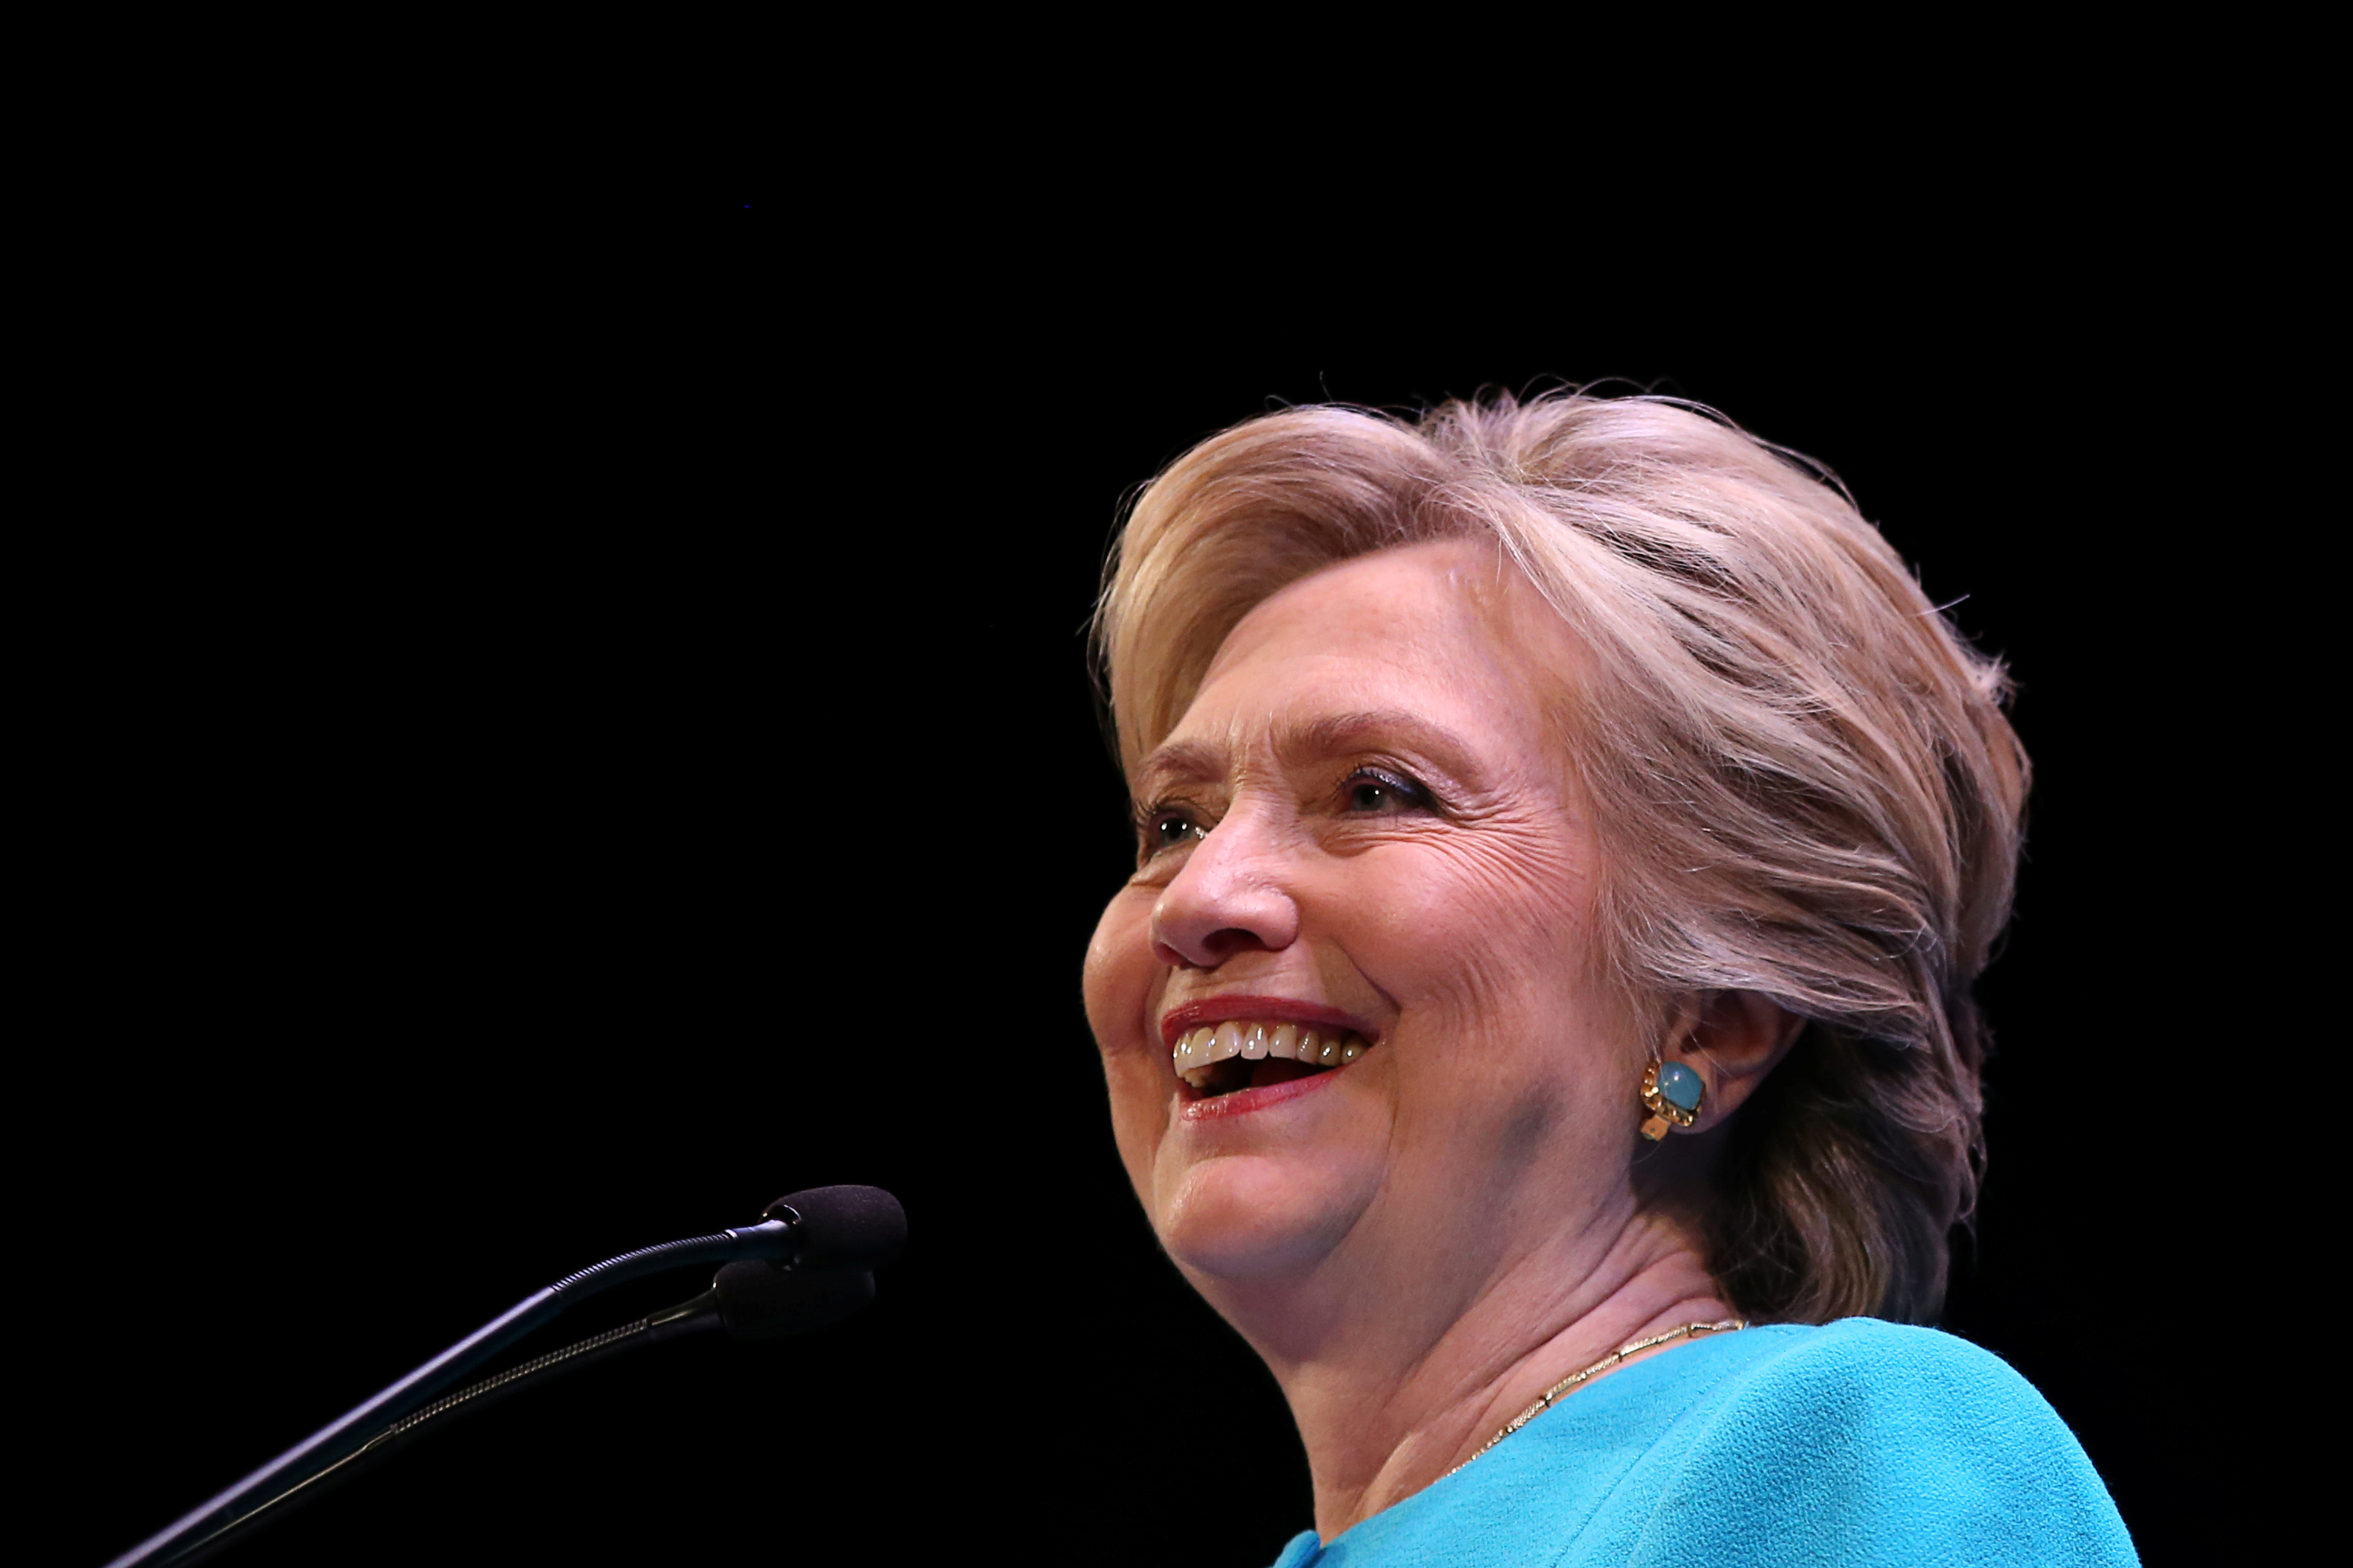 Transcripts of Clinton's Wall Street talks released in new Wikileaks dump